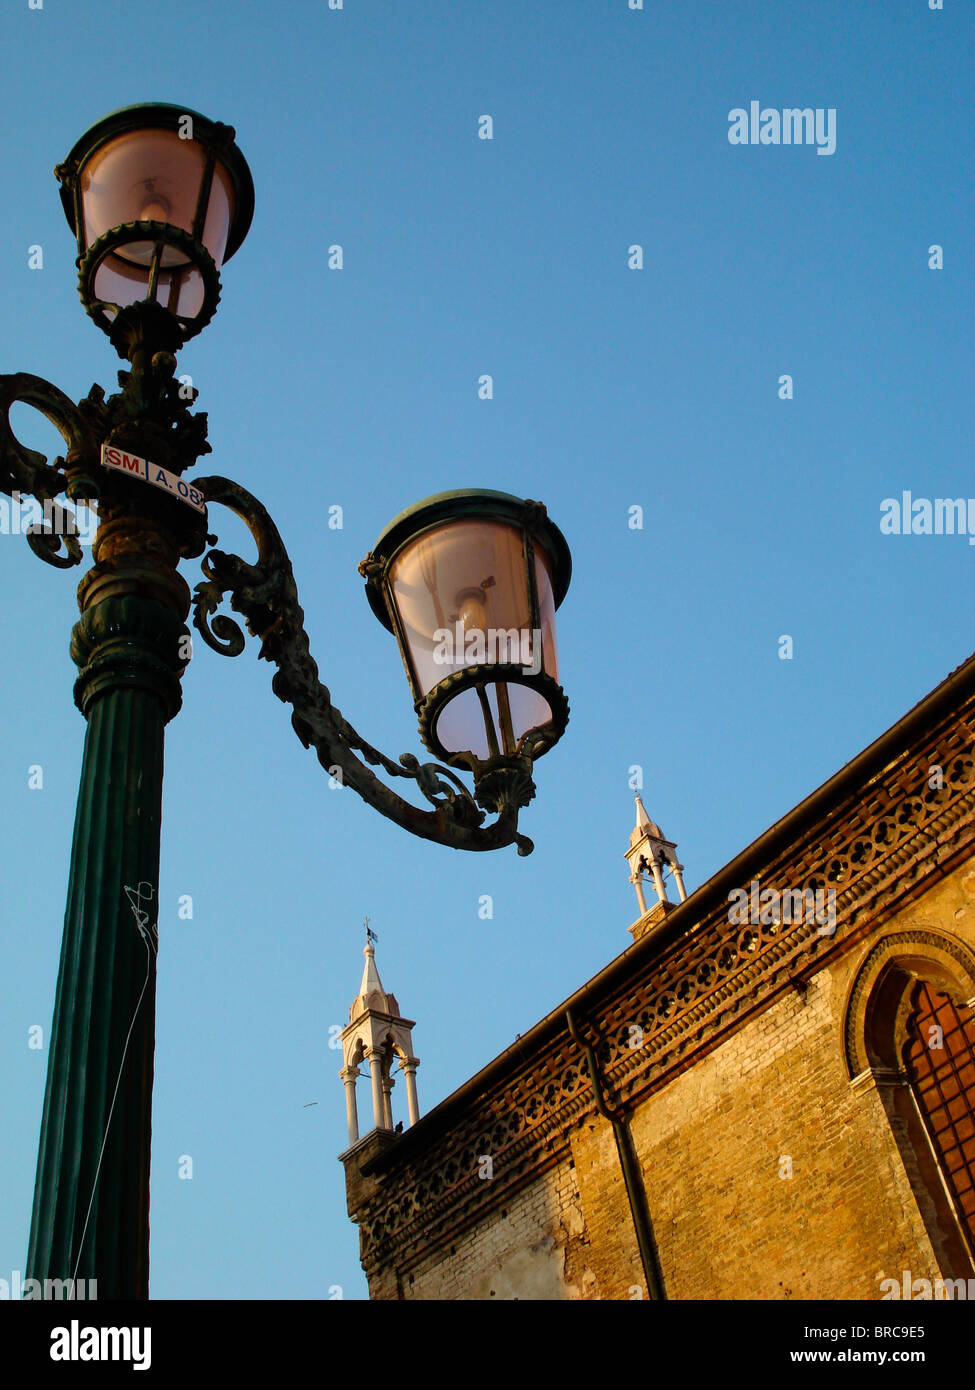 Lamp taken in warm sun light, in Campo Santo Stefano in Venice, Italy Stock Photo